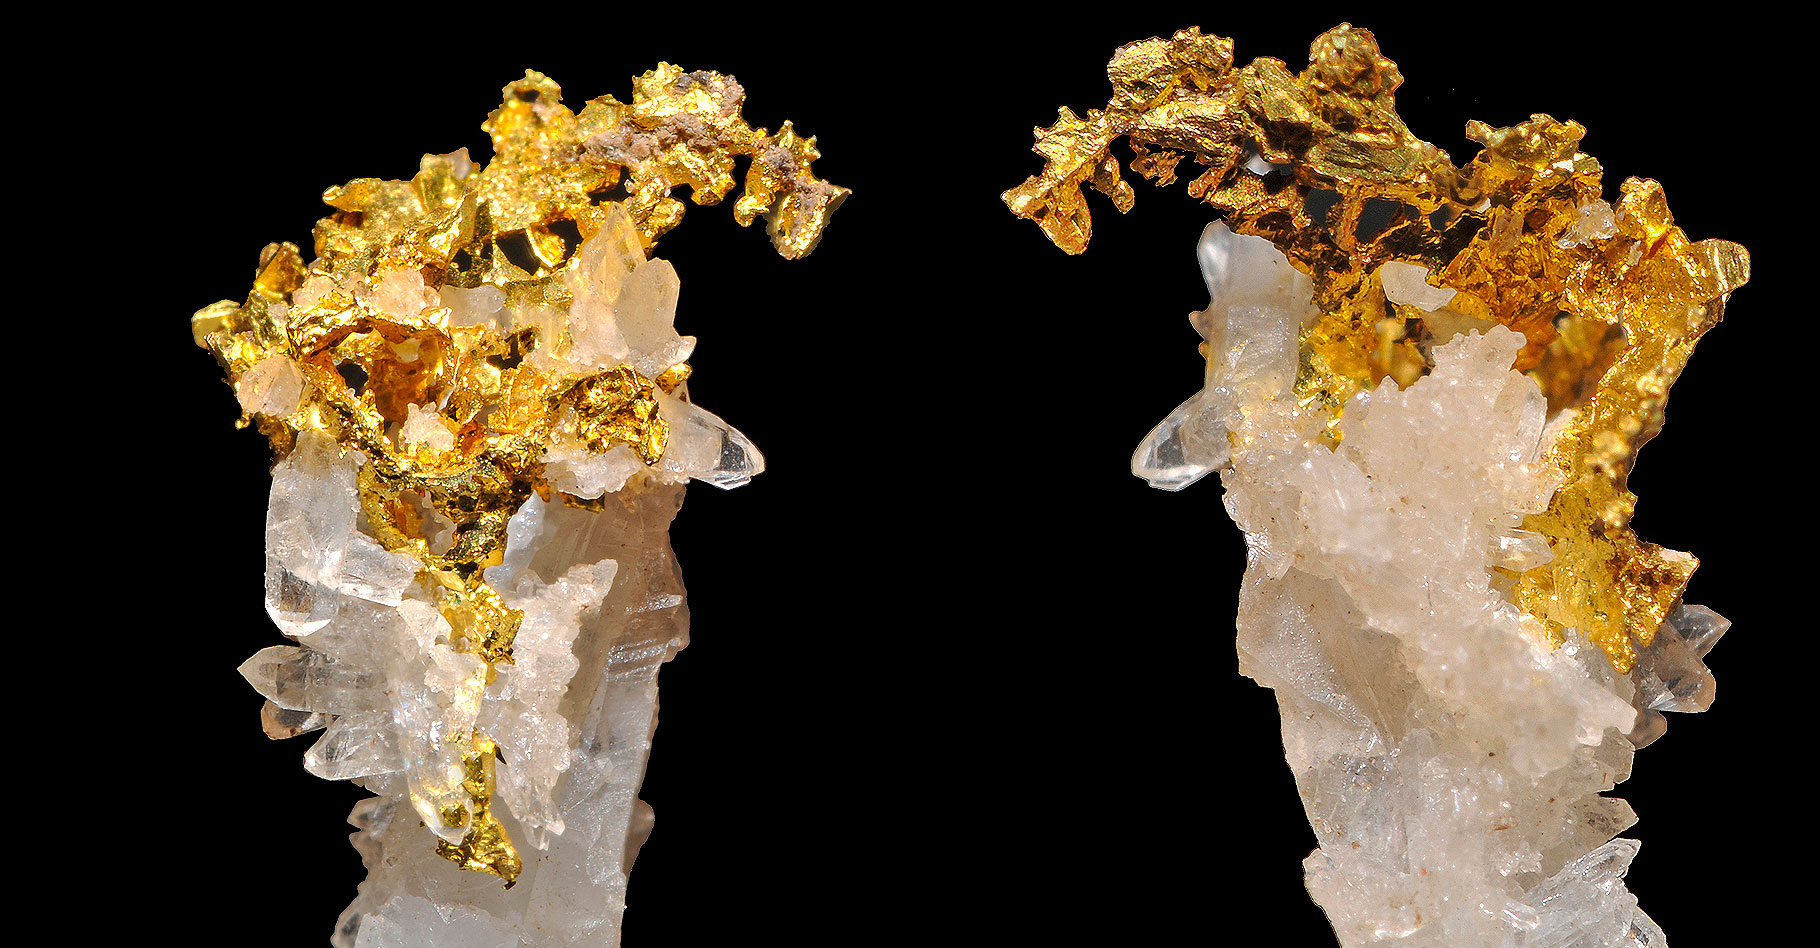 Cristaux d'or et de quartz. © Parent Géry, CC by-sa 3.0 